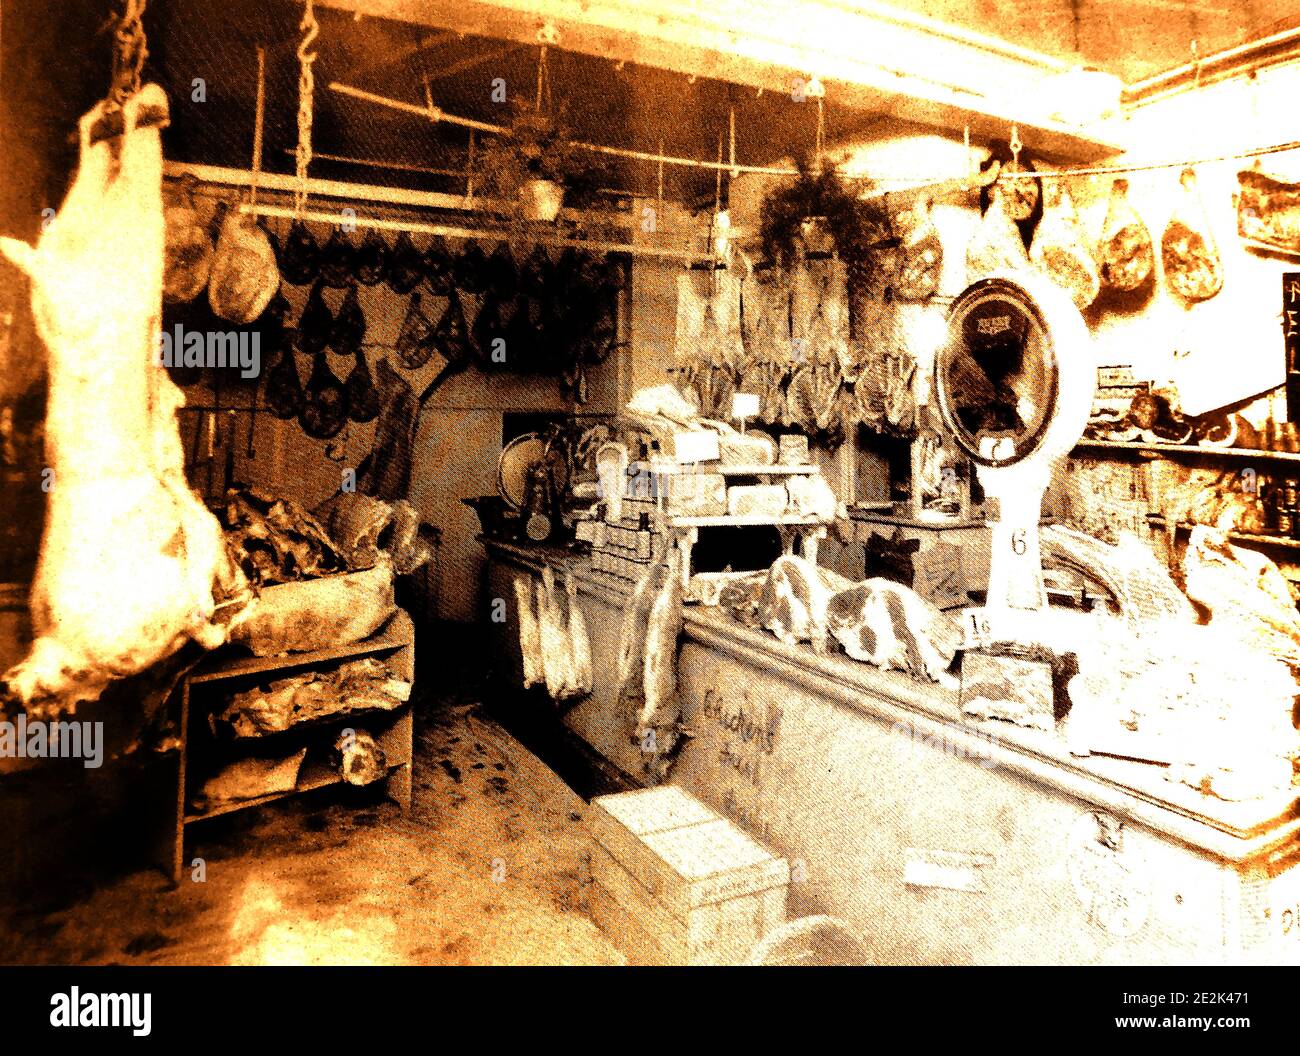 Une photo ancienne de l'intérieur d'un boucherie traditionnel à Whitby, dans le North Yorkshire, en Angleterre. La viande coupée et les carcasses sont exposées en plein air, comme c'était la pratique générale. Une vieille balance à viande est visible sur le comptoir. Banque D'Images